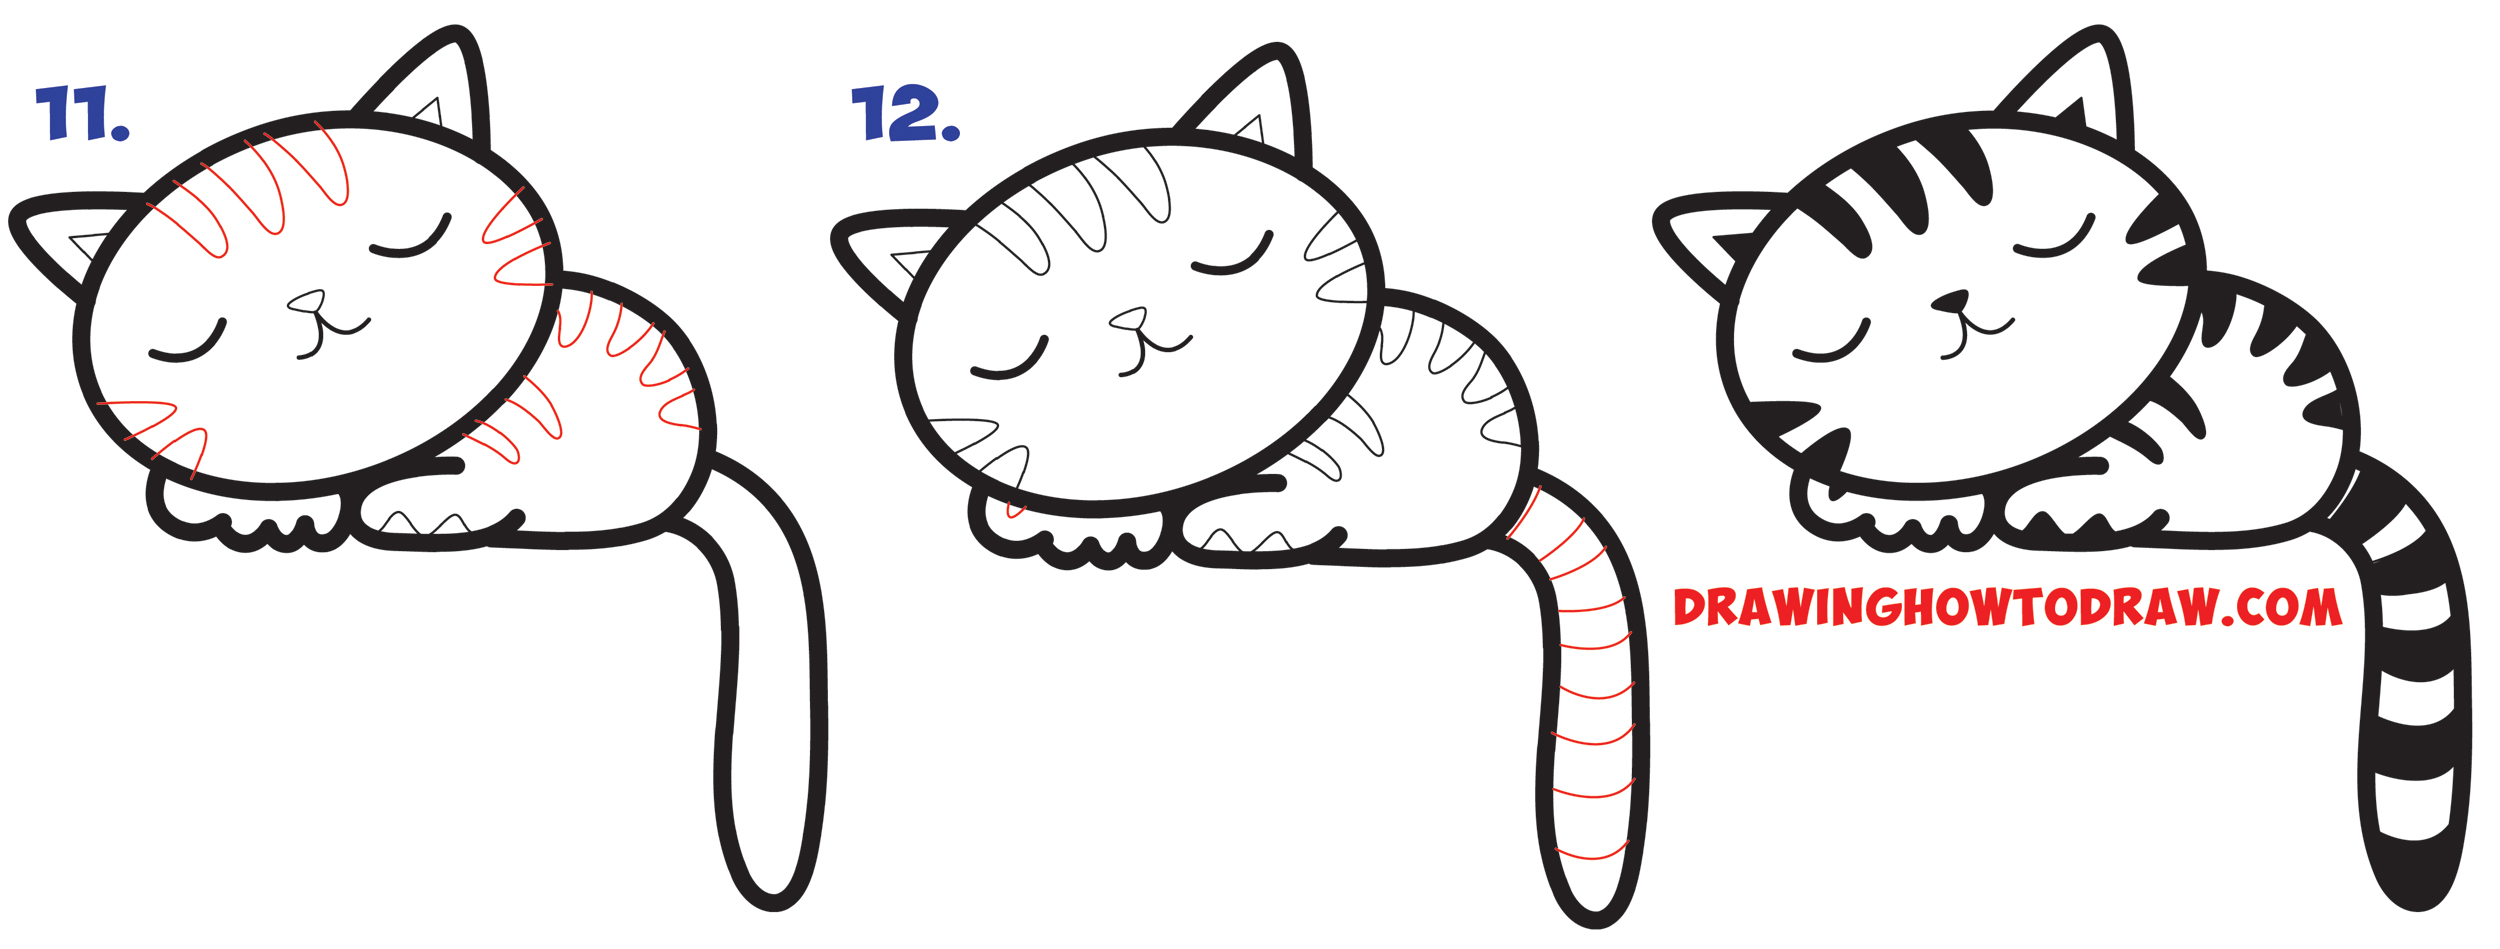 How to Draw a Supercute Kawaii Cartoon  Cat  Kitten 